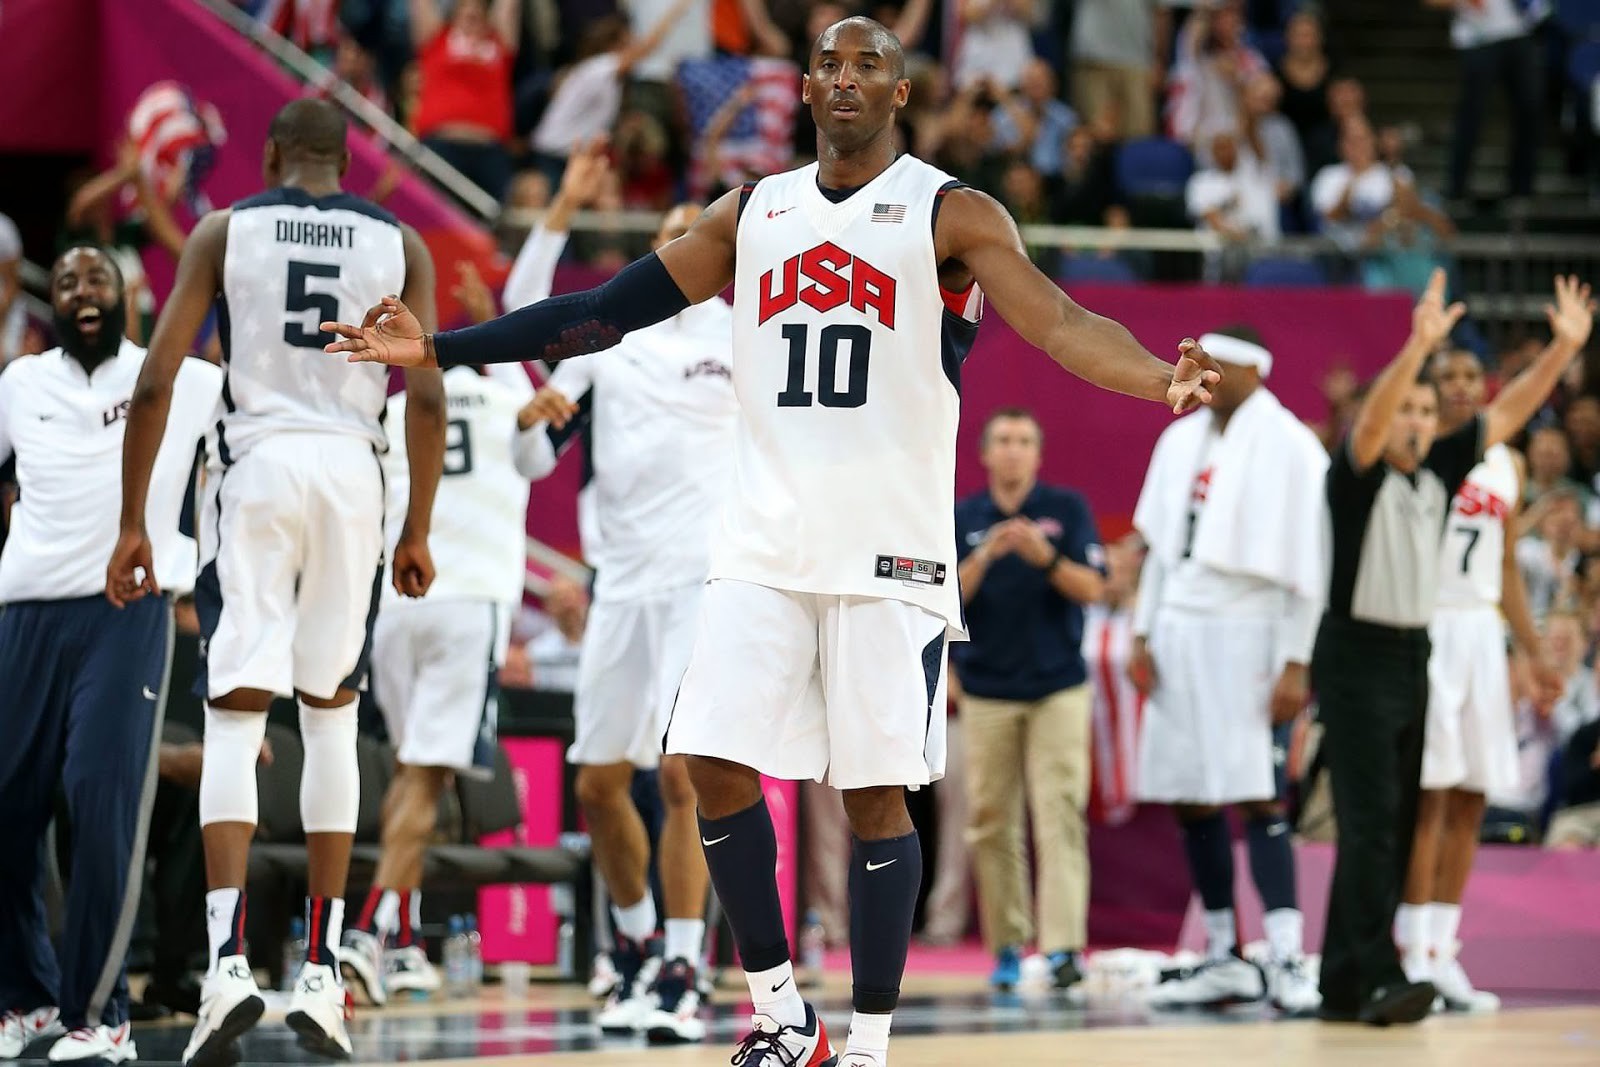 Nhìn lại kỳ Olympic 2008, phong cách lãnh đạo của Kobe Bryant và LeBron James khác nhau thế nào? - Ảnh 2.